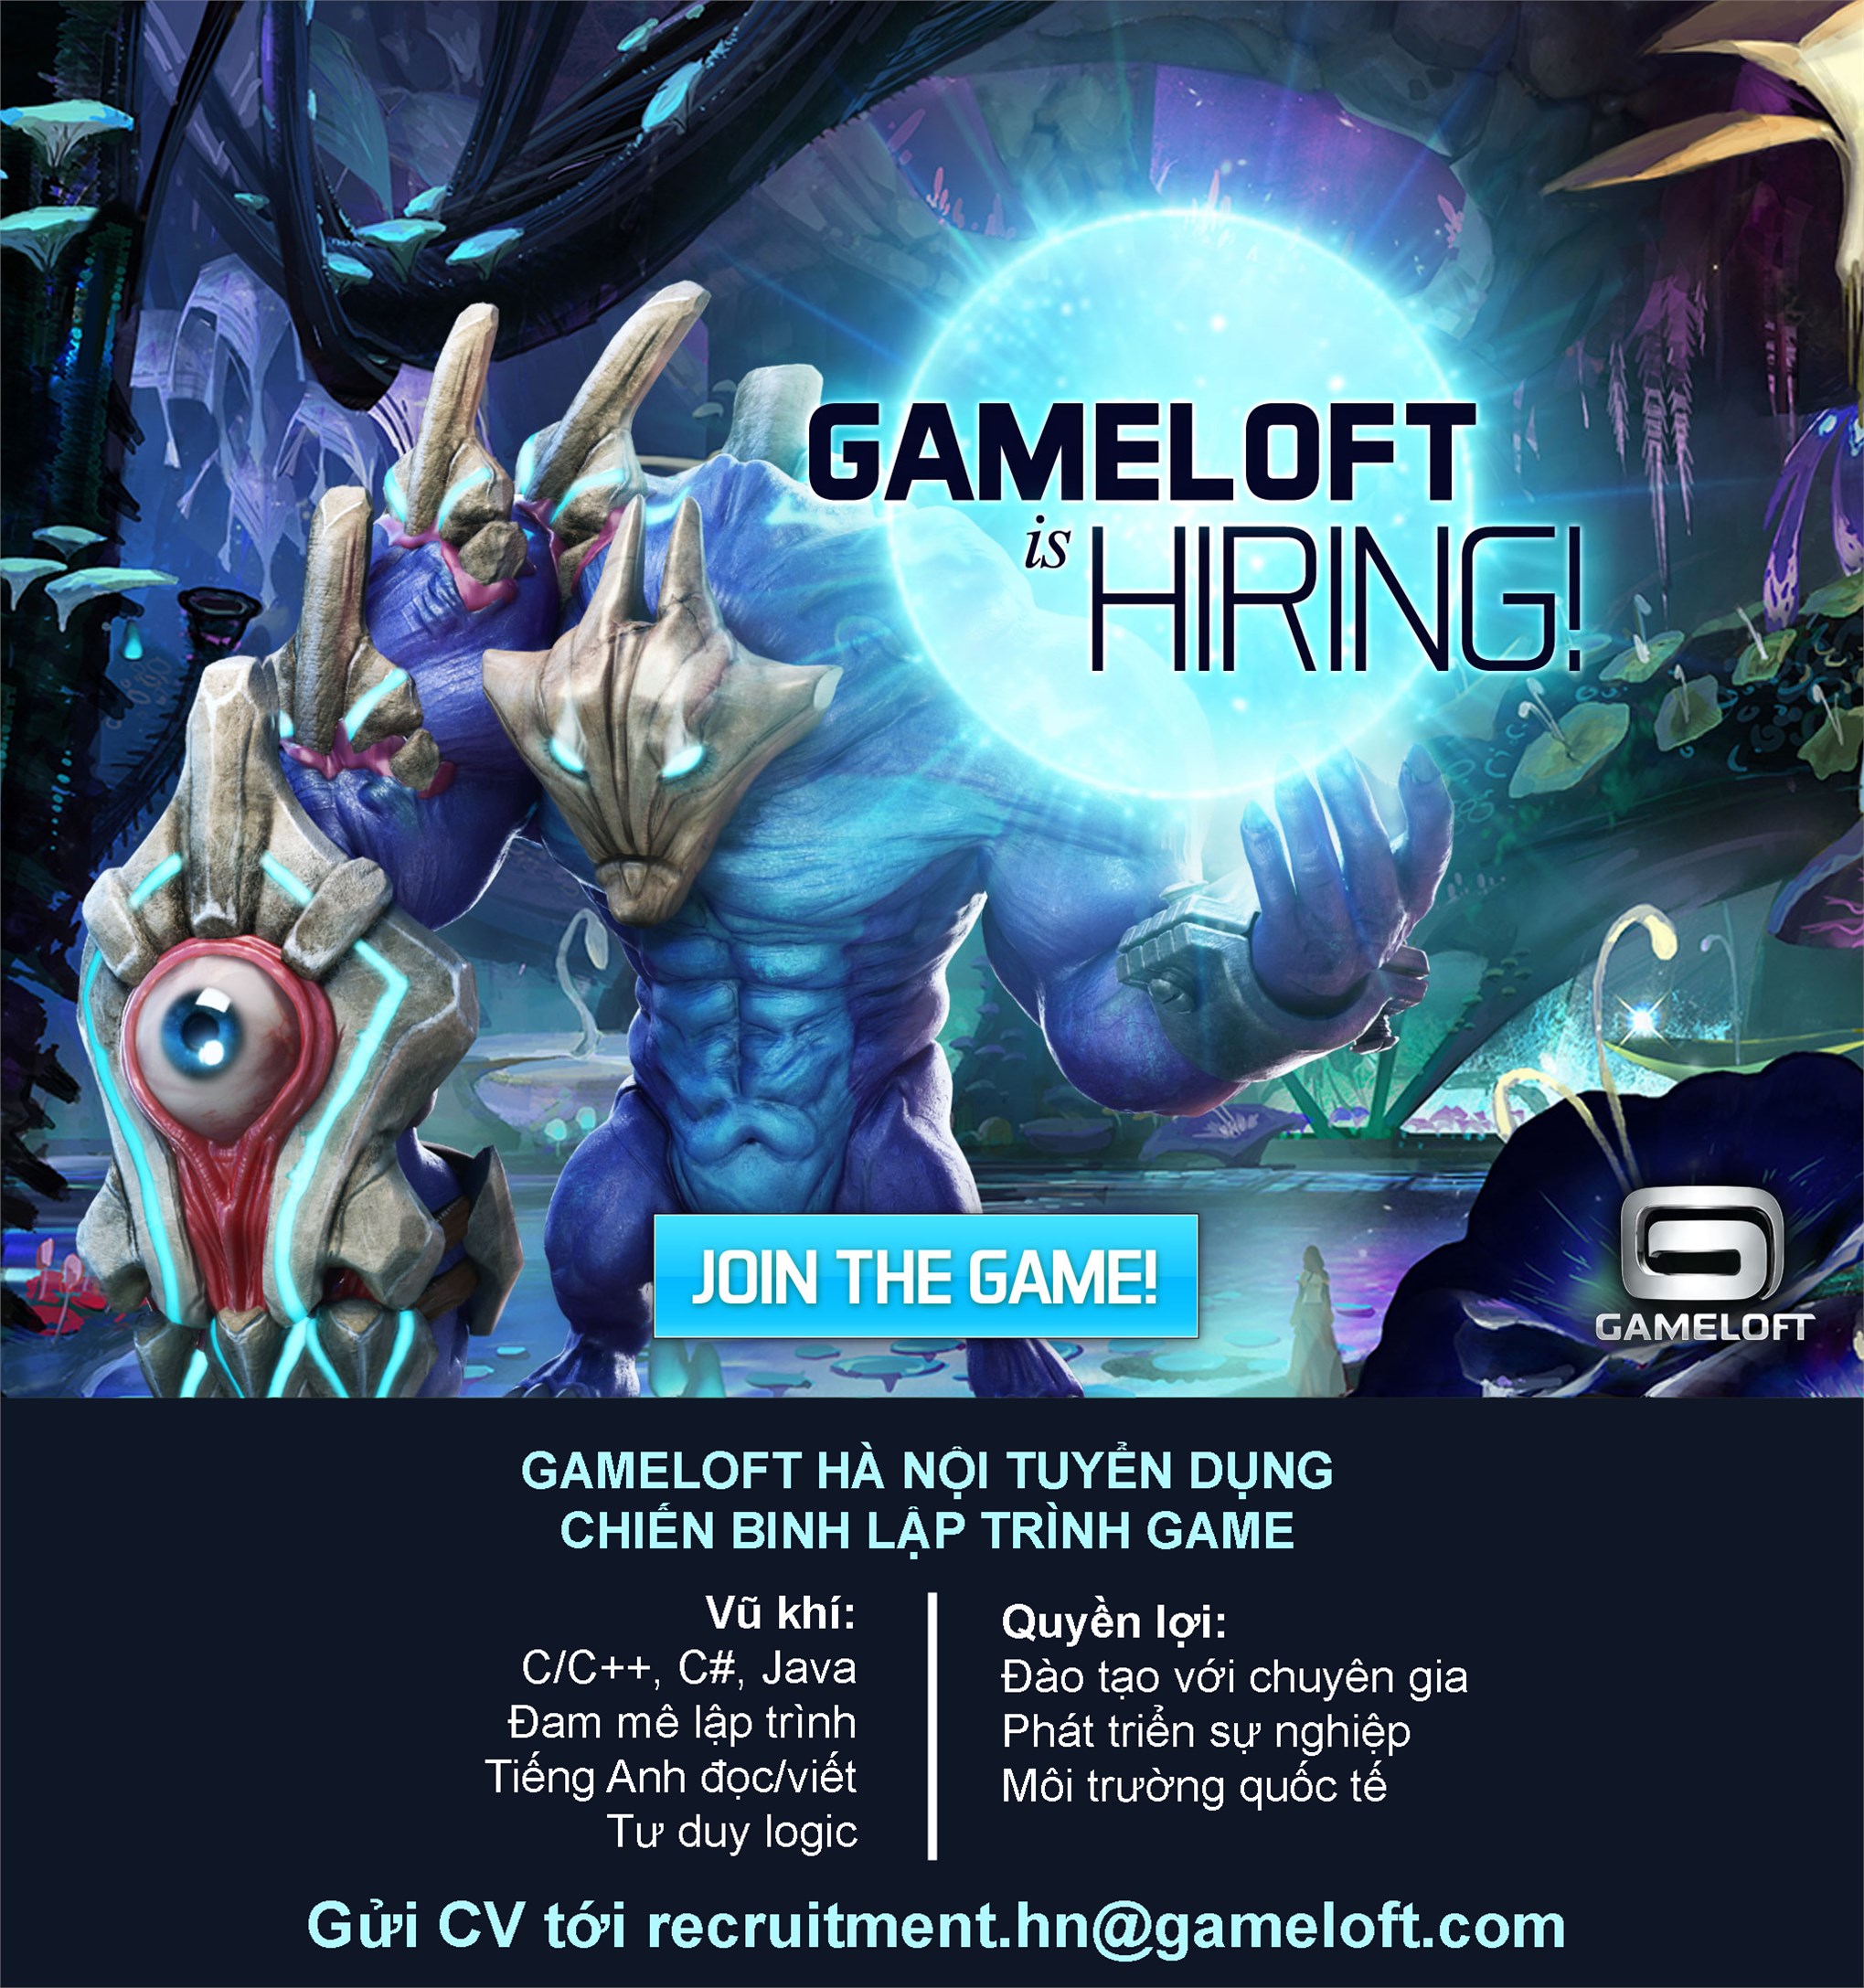 Công ty Gameloft tuyển thực tập sinh lập trình game năm 2022